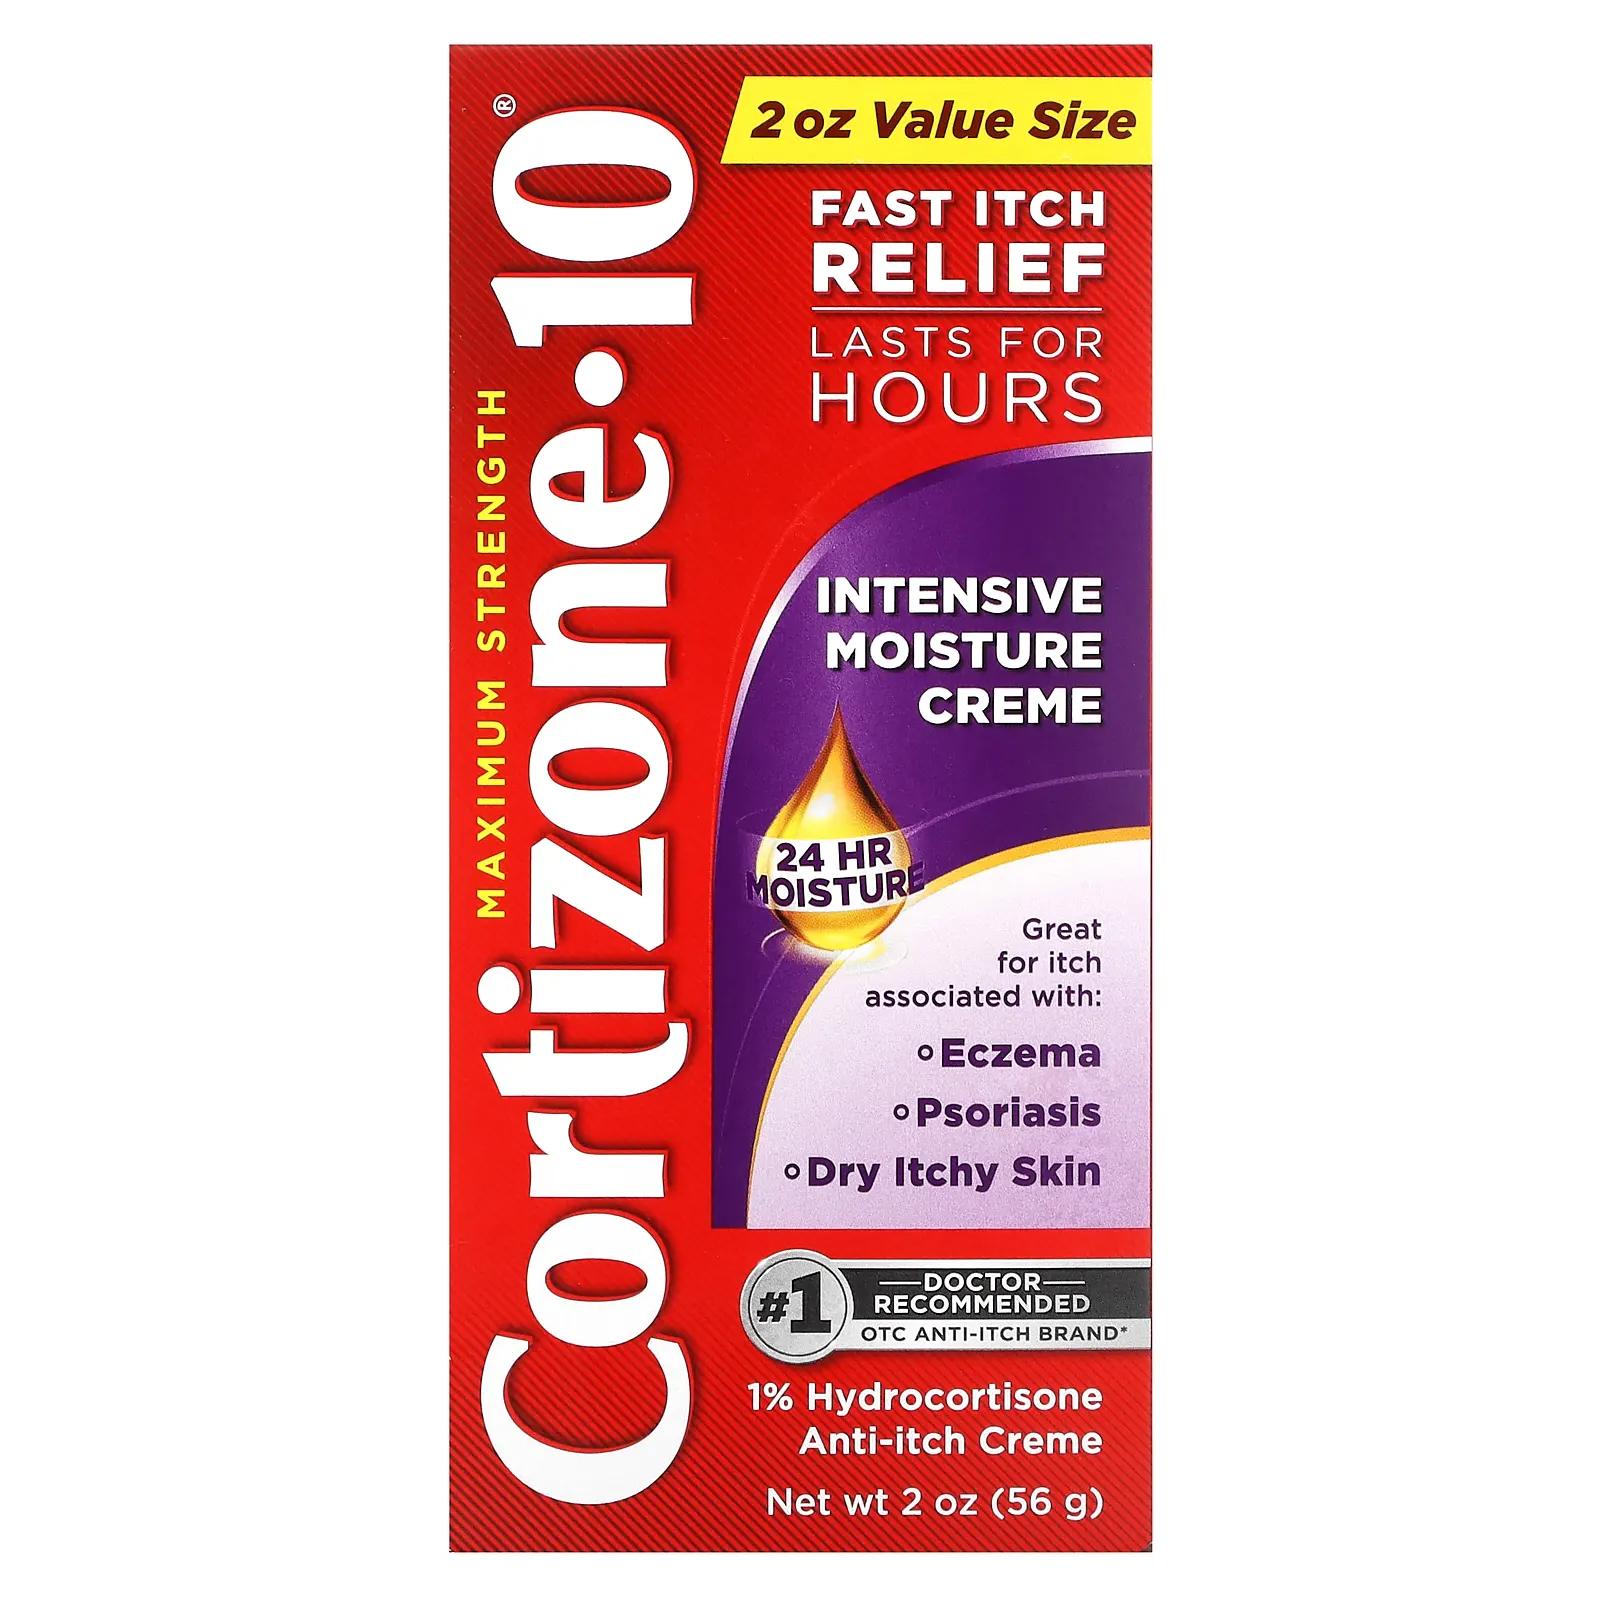 Cortizone 10 Maximum Strength интенсивный увлажняющий крем 56 г (2 унции) крем cortizone 10 maximum strength для чувствительной кожи 56 г